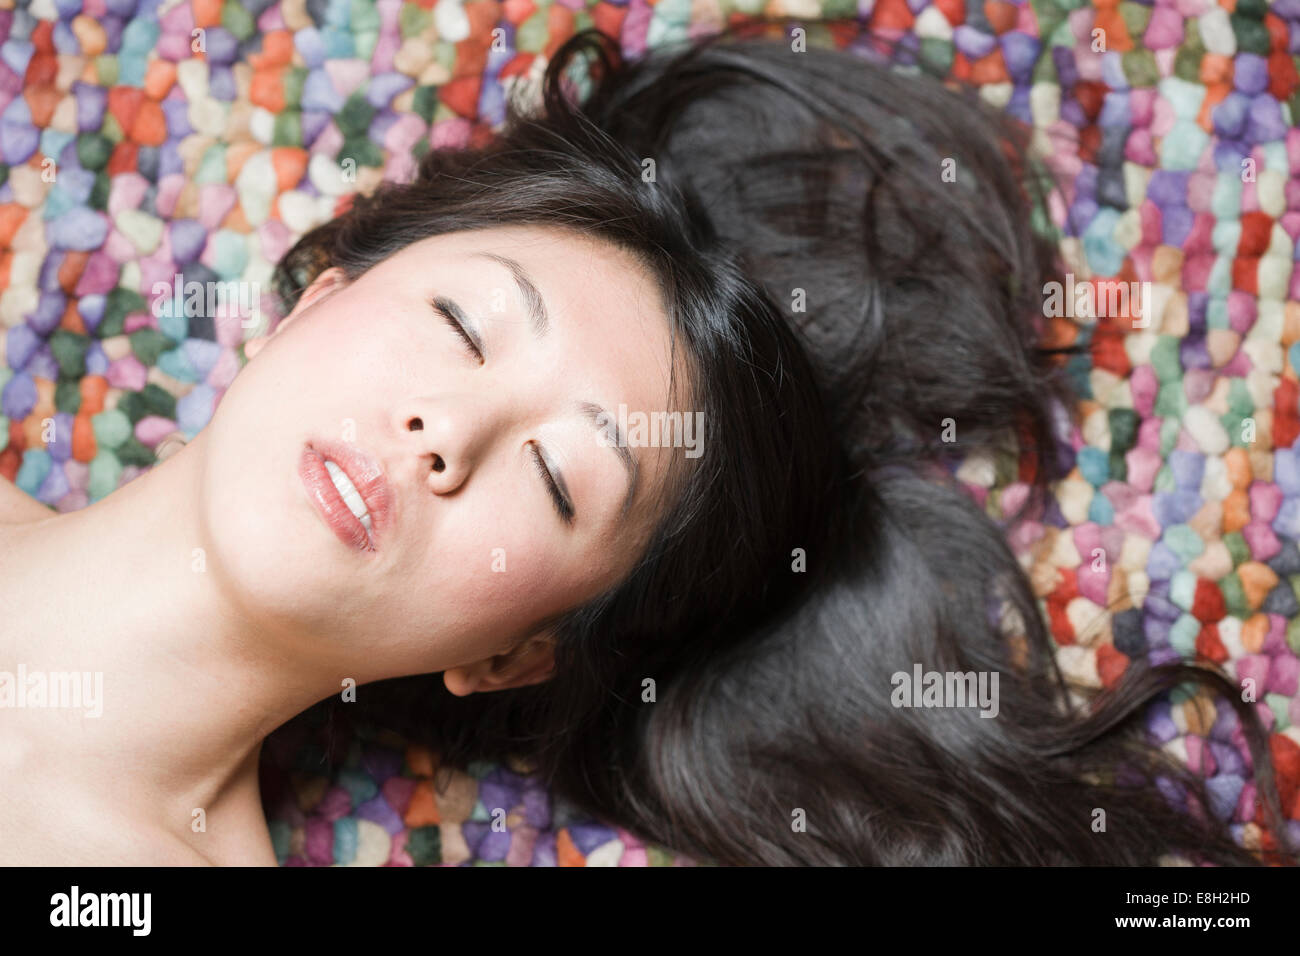 Portrait de femme asiatique aux yeux clos en face de la masse colorée Banque D'Images